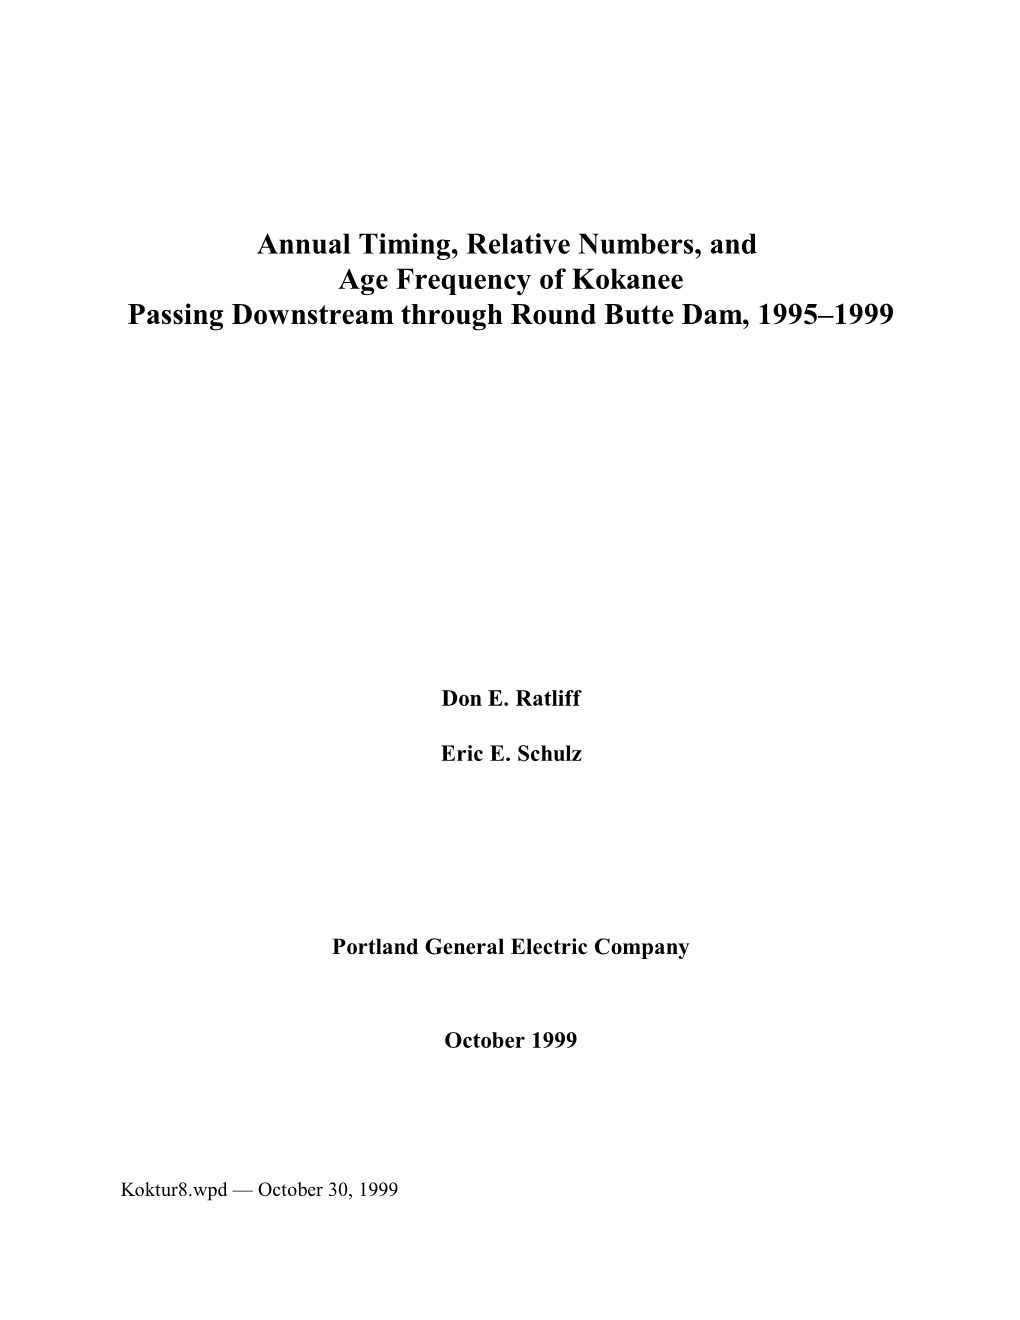 1995-1999 Summary Report